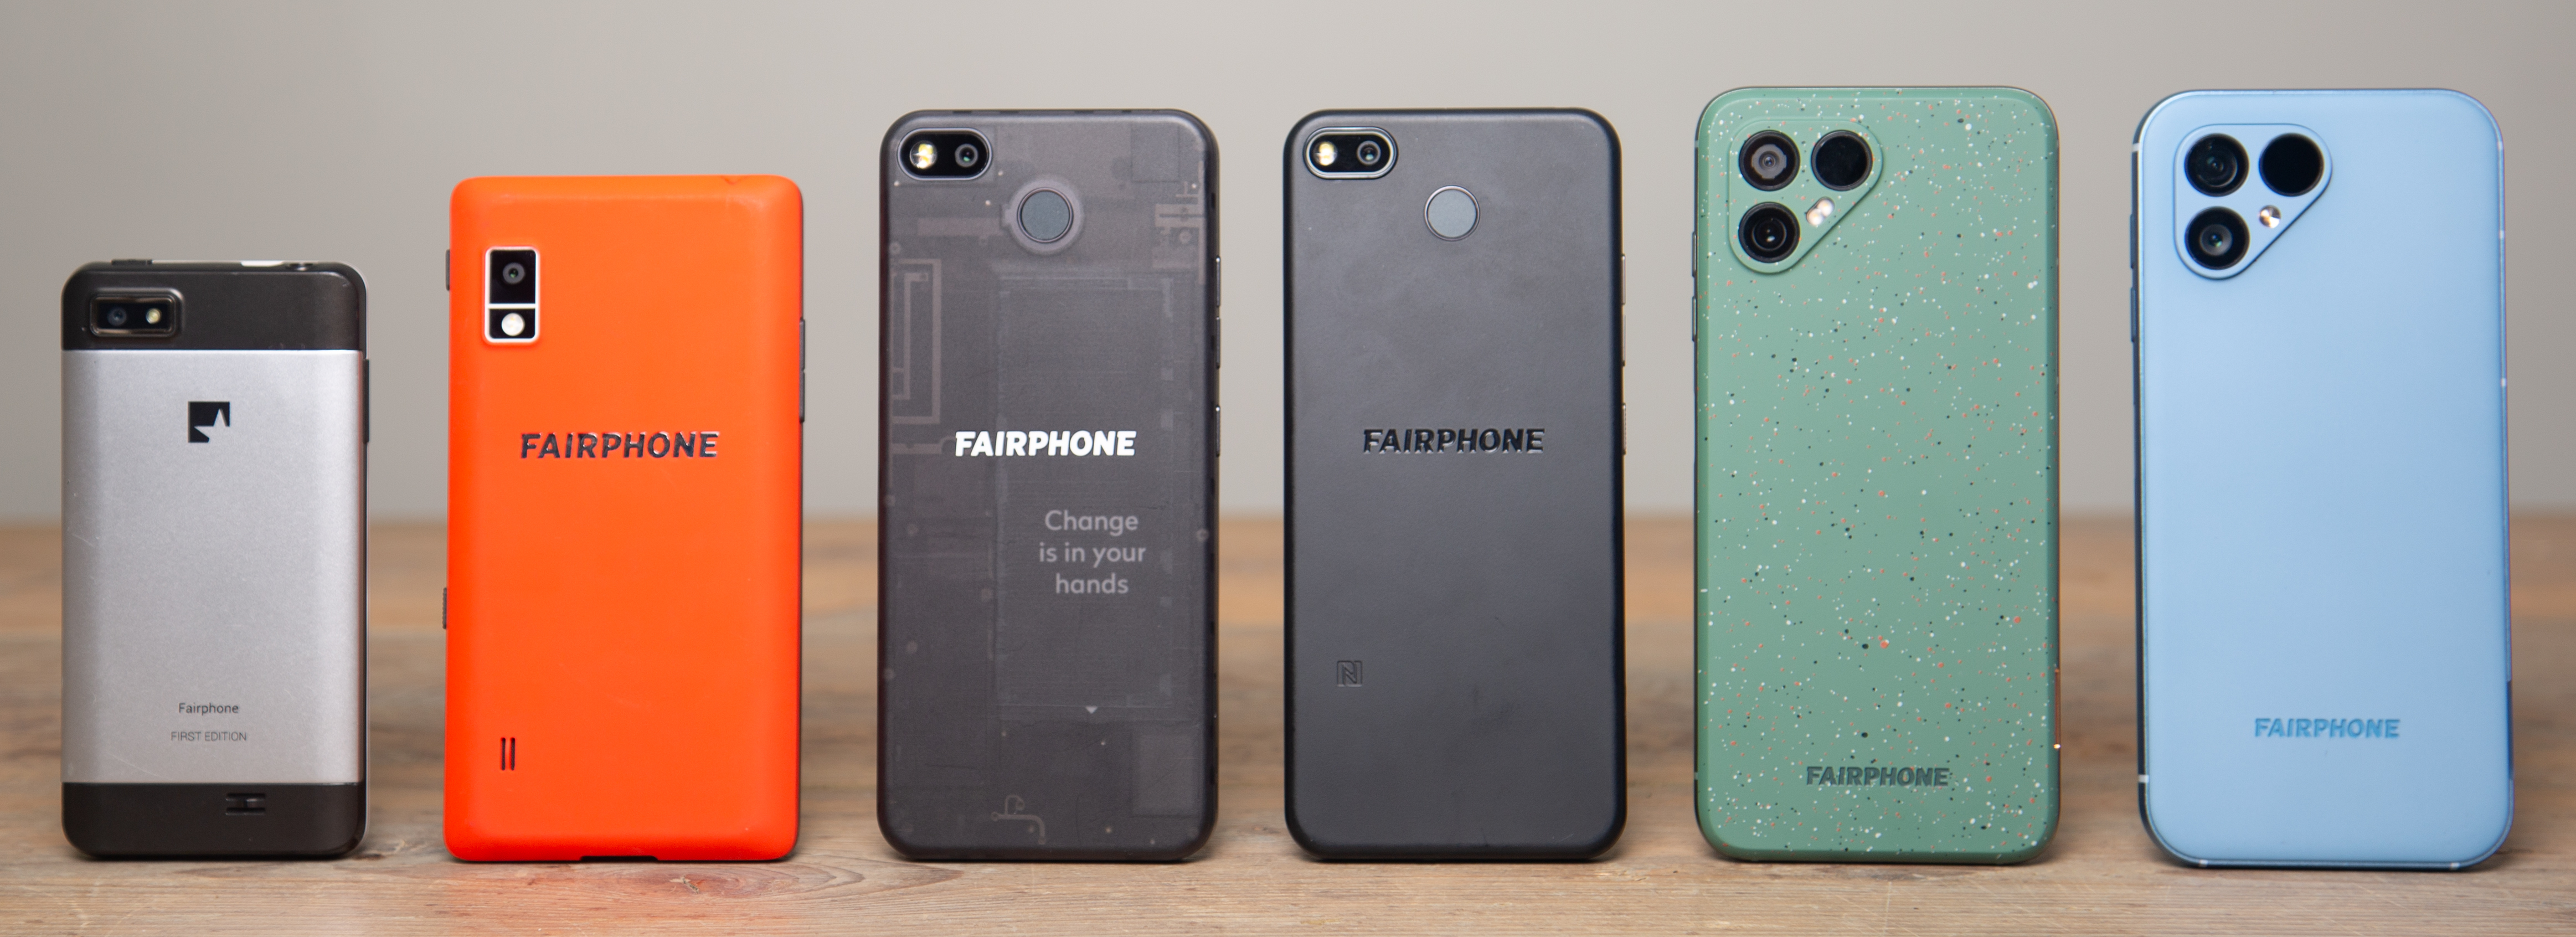 Fairphone family